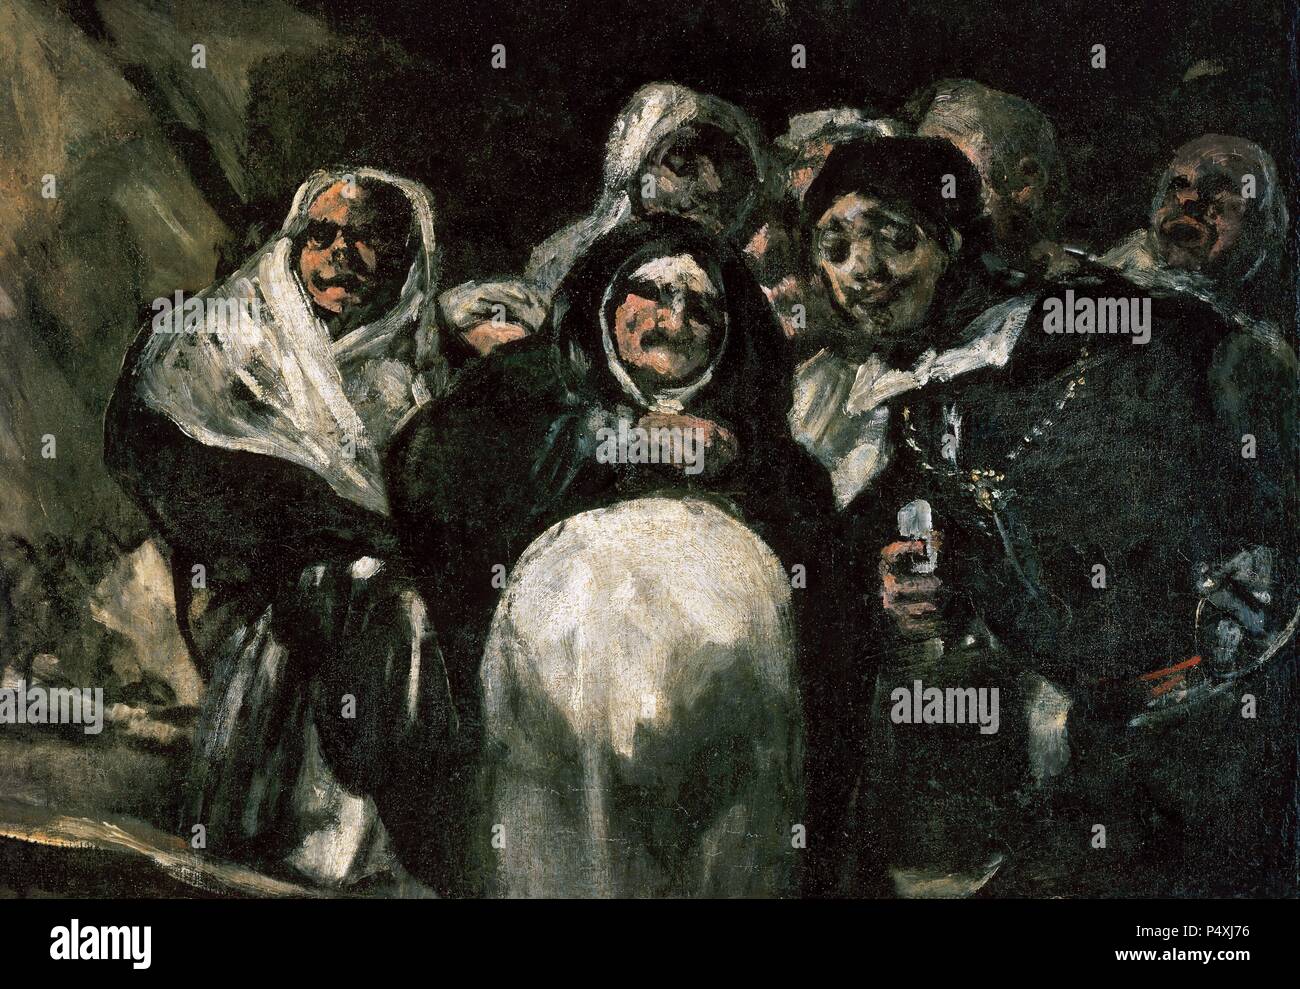 Francisco de Goya y Lucientes (1746-1828). Spanischer Maler. Pilgerfahrt zu den Brunnen von San Isidro oder das Heilige Offizium, 1820-1823. Detail. Größe: 127 x 266 cm. Öl auf Putz an der Wand auf die Leinwand übertragen. Prado Museum. Madrid, Spanien. Stockfoto